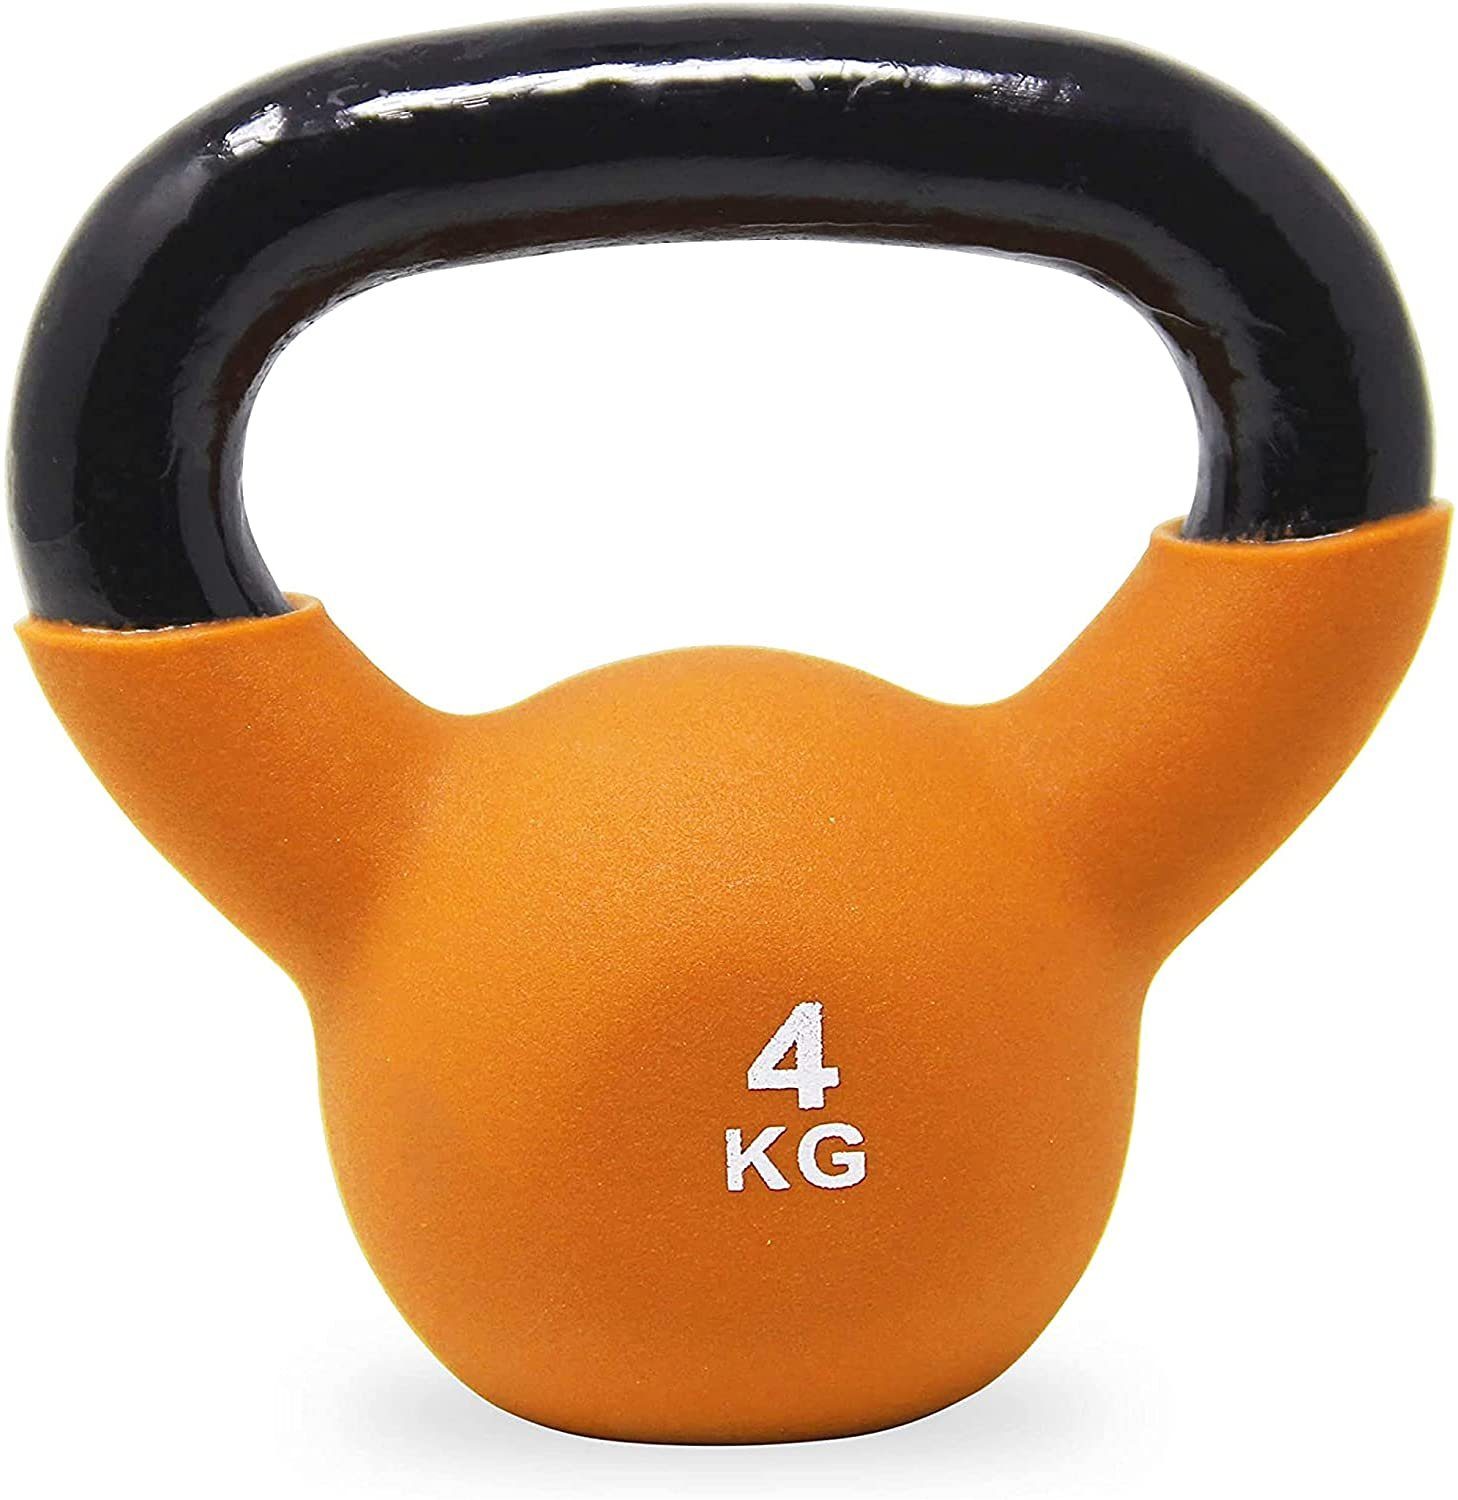 inkl. Workout, 2-26 Farben/Gewichte, (Gelb) Kettlebell 2 versch. Kugelhantel kg POWRX Neopren Kg